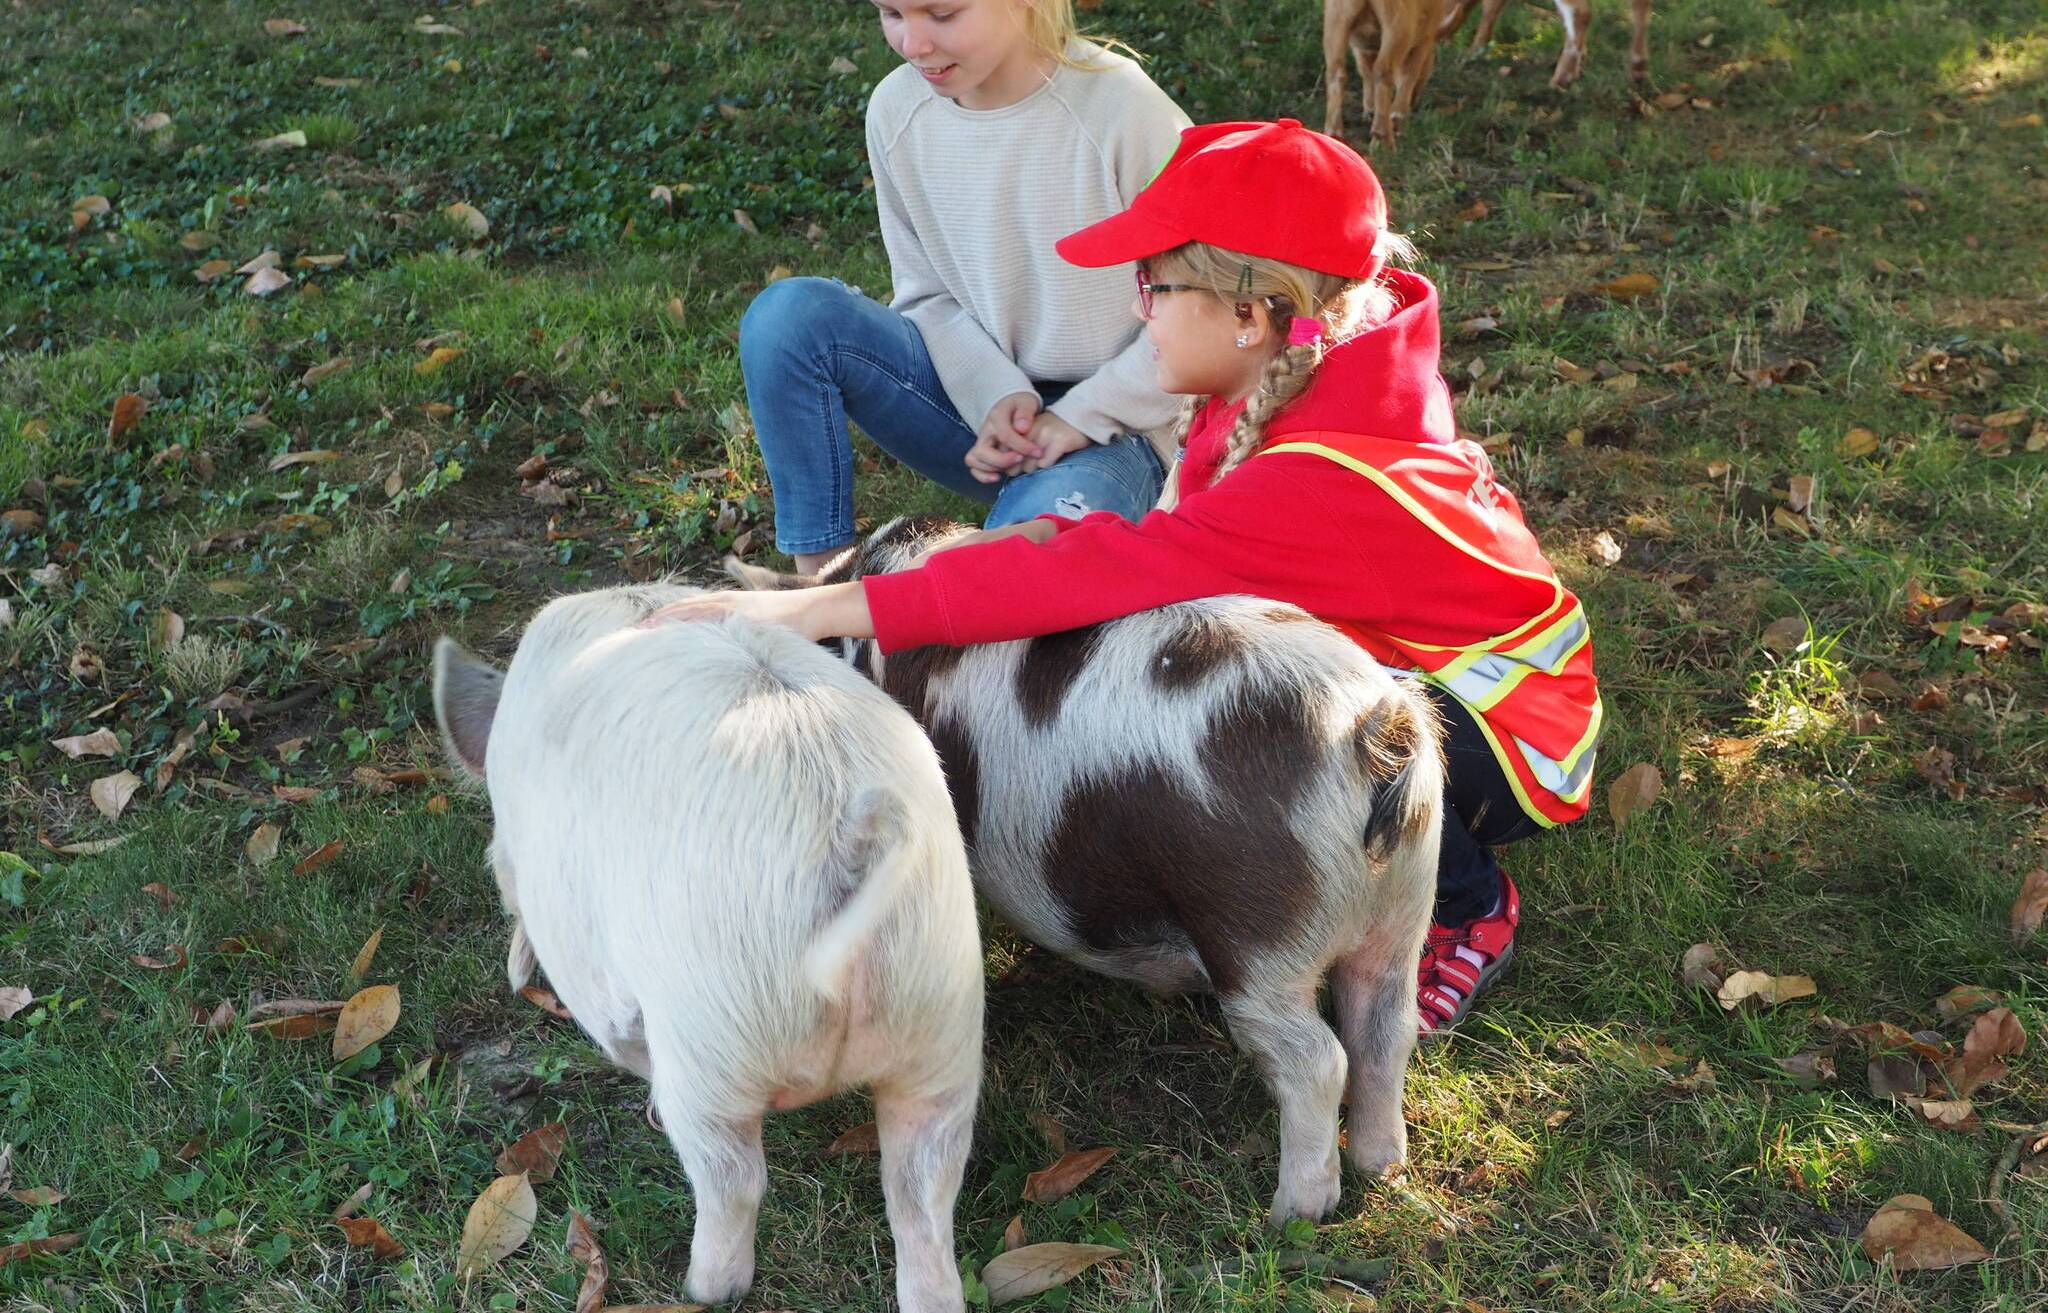  Schweine zu streicheln war ein besonderes Erlebnis für die Kinder. 